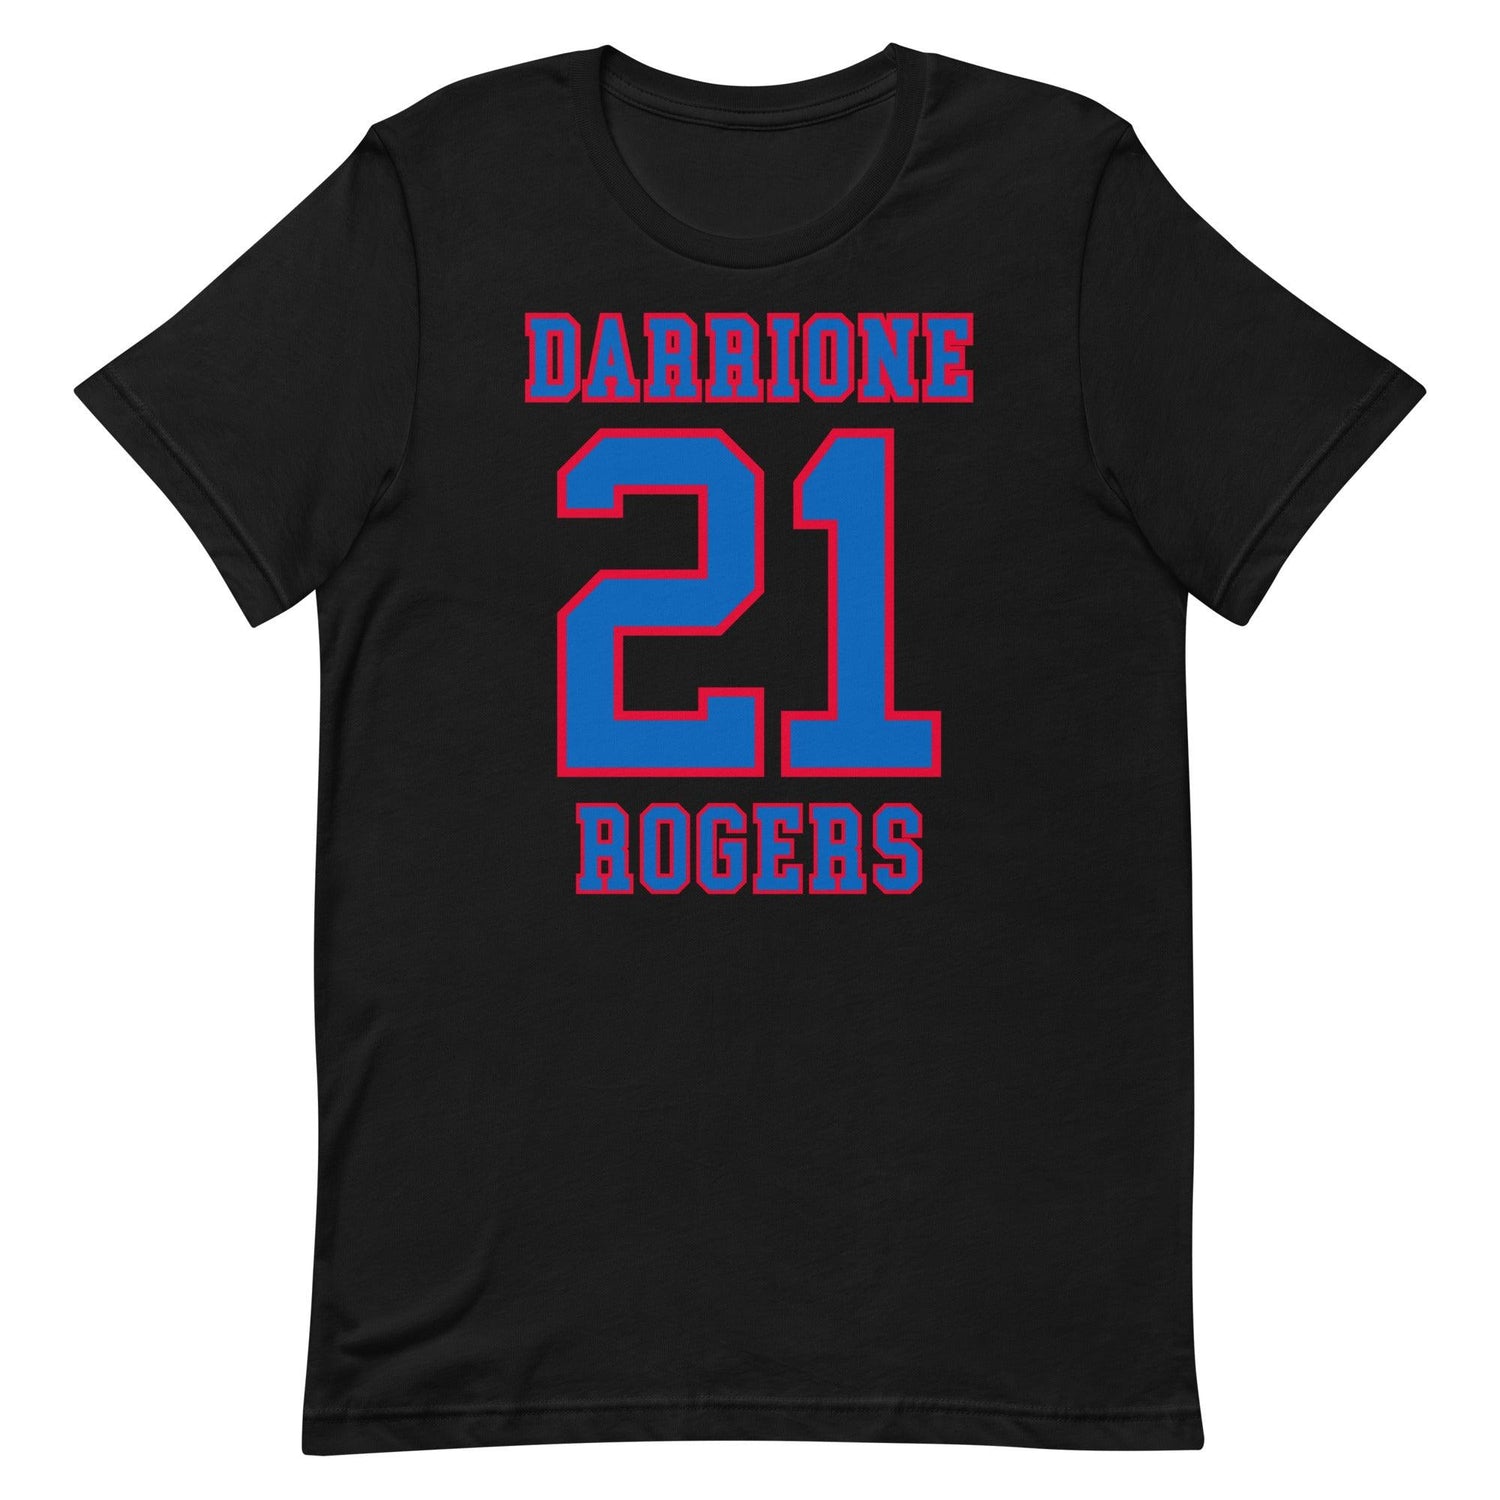 Darrione Rogers "Jersey" t-shirt - Fan Arch